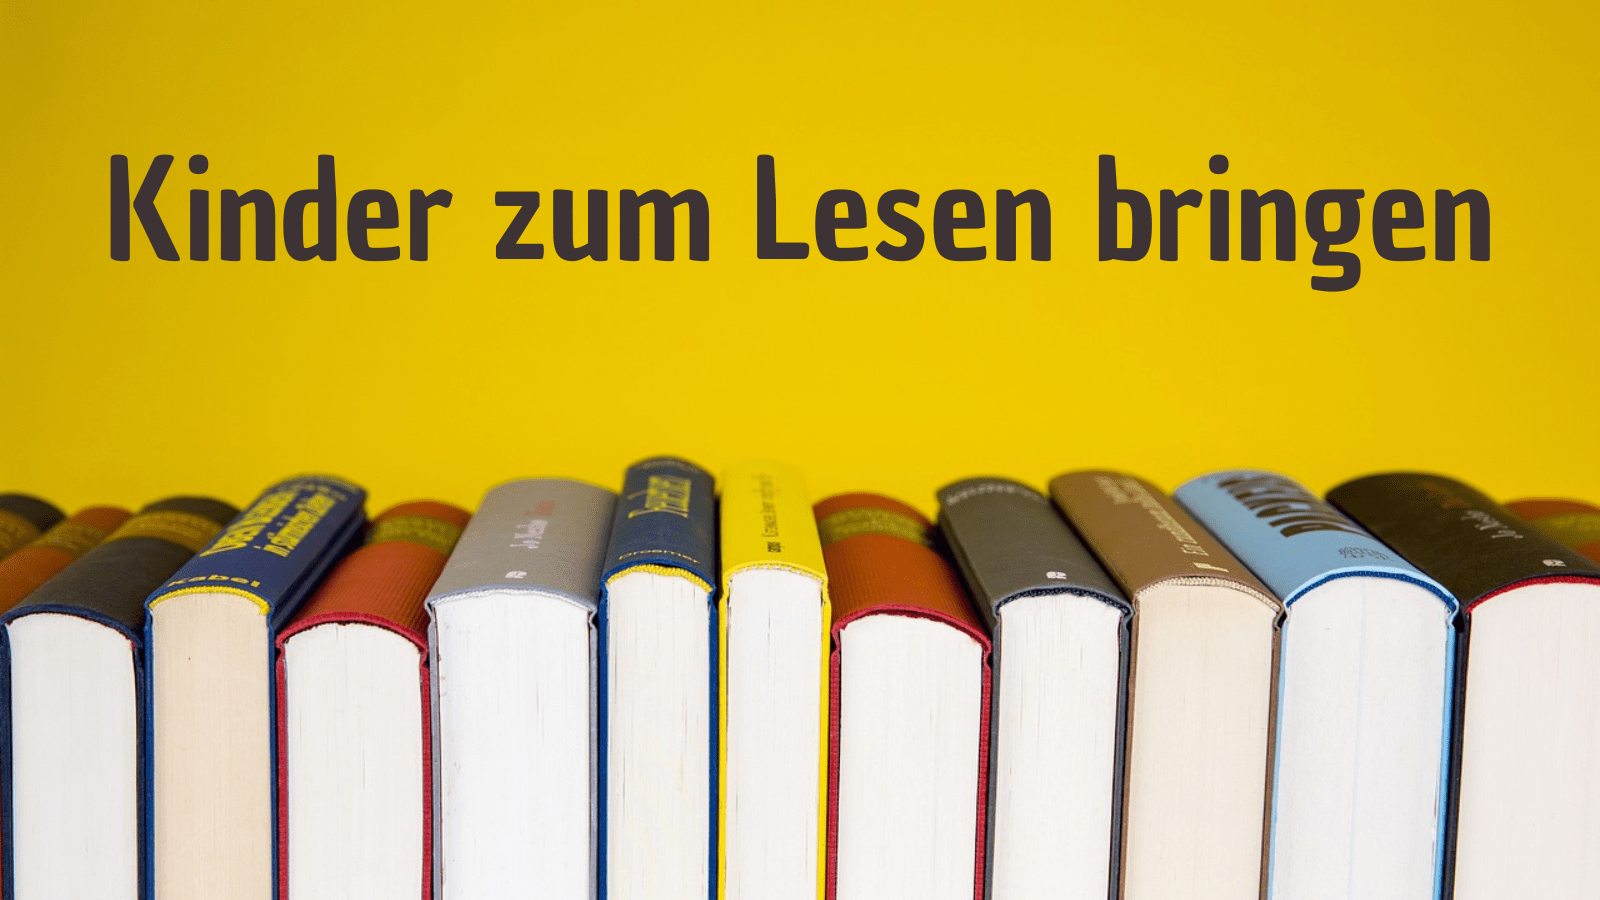 Kinder zum Lesen bringen auf kinderalltag.de